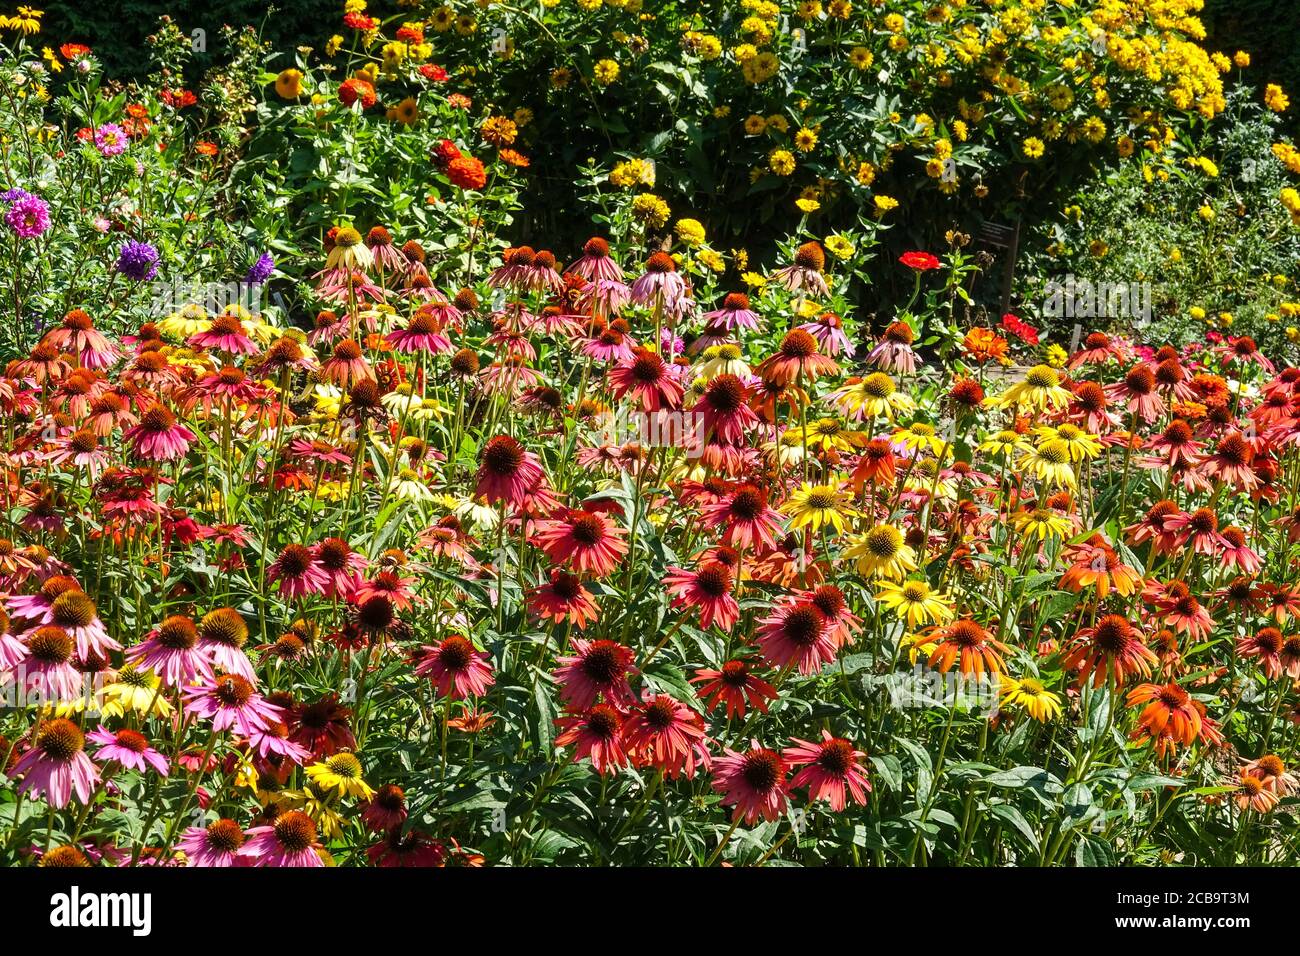 Superbes fleurs dans un jardin coloré, fleuri de l'Echinacea Cheyenne Spirit diverses couleurs, fond Zinnias Heliopsis Sommersonne aka Summer Sun Banque D'Images